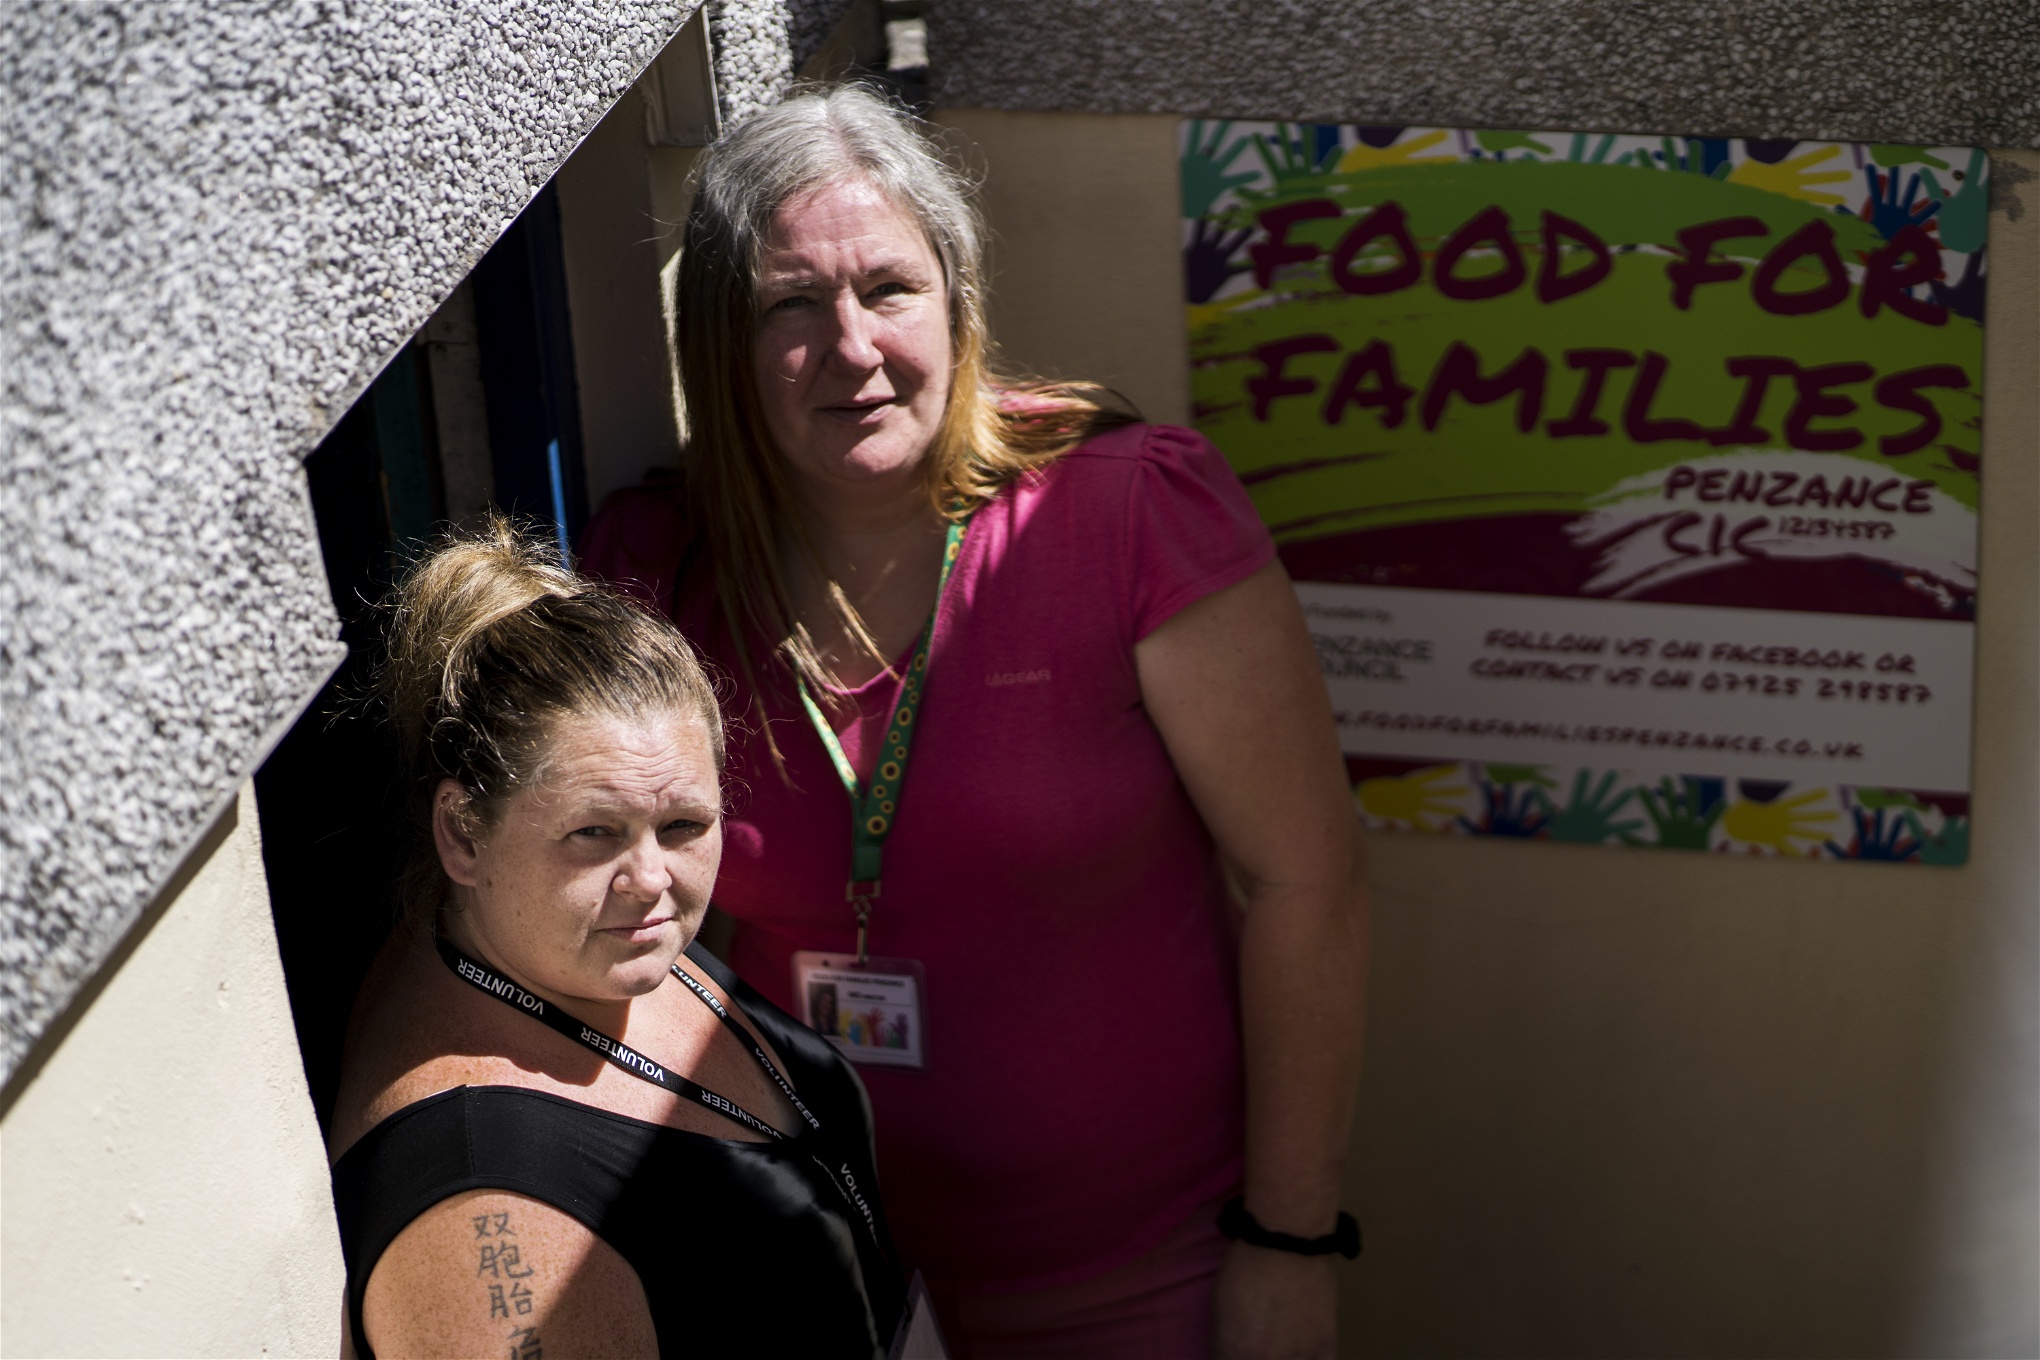 Foto: Maria Lundin OsvaldsMo Williams (t.h) och Julia Tucker (t.v) utanför organisationen Food For Families källarlokal.